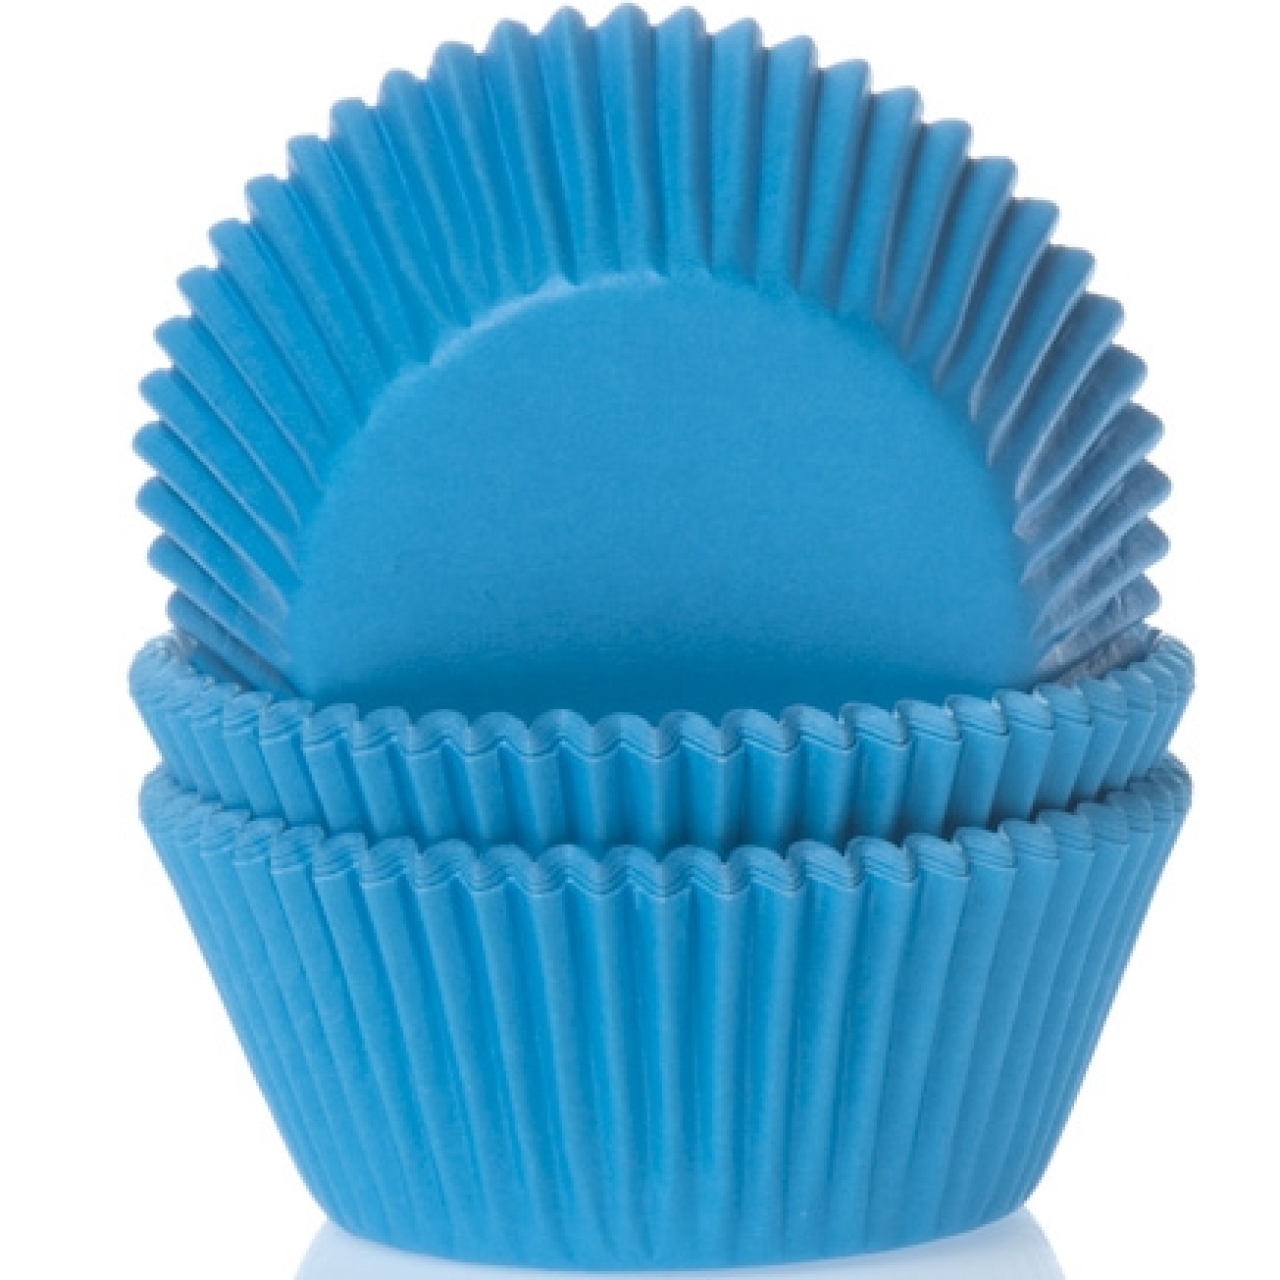 Muffinförmchen, blau, 5,0 cm, 50 Stk.